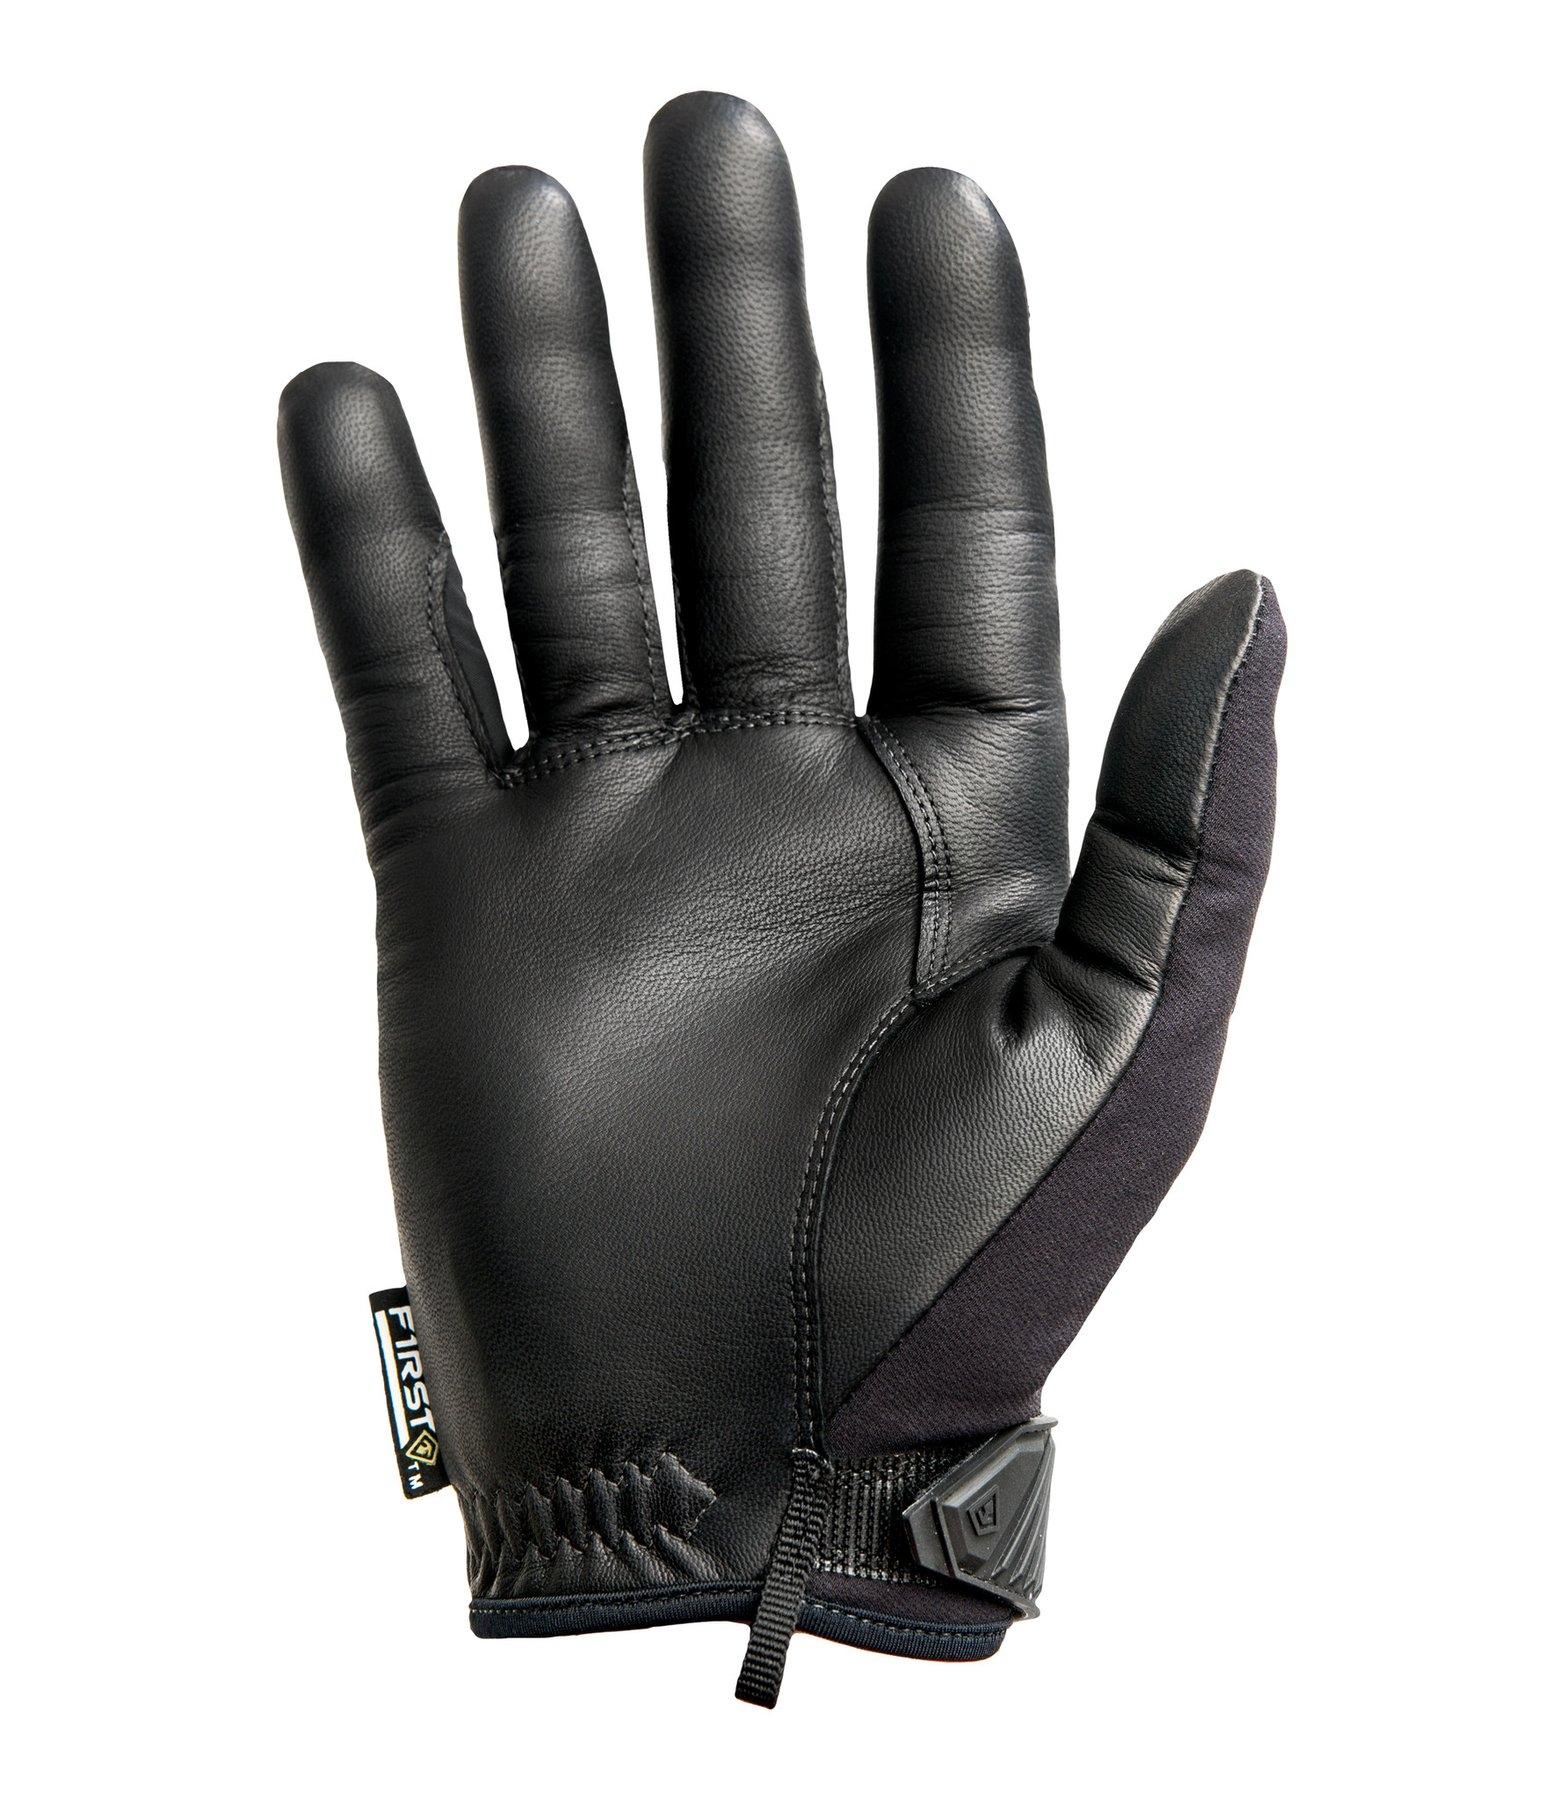 First Tactical Women's Lightweight Duty Padded Glove